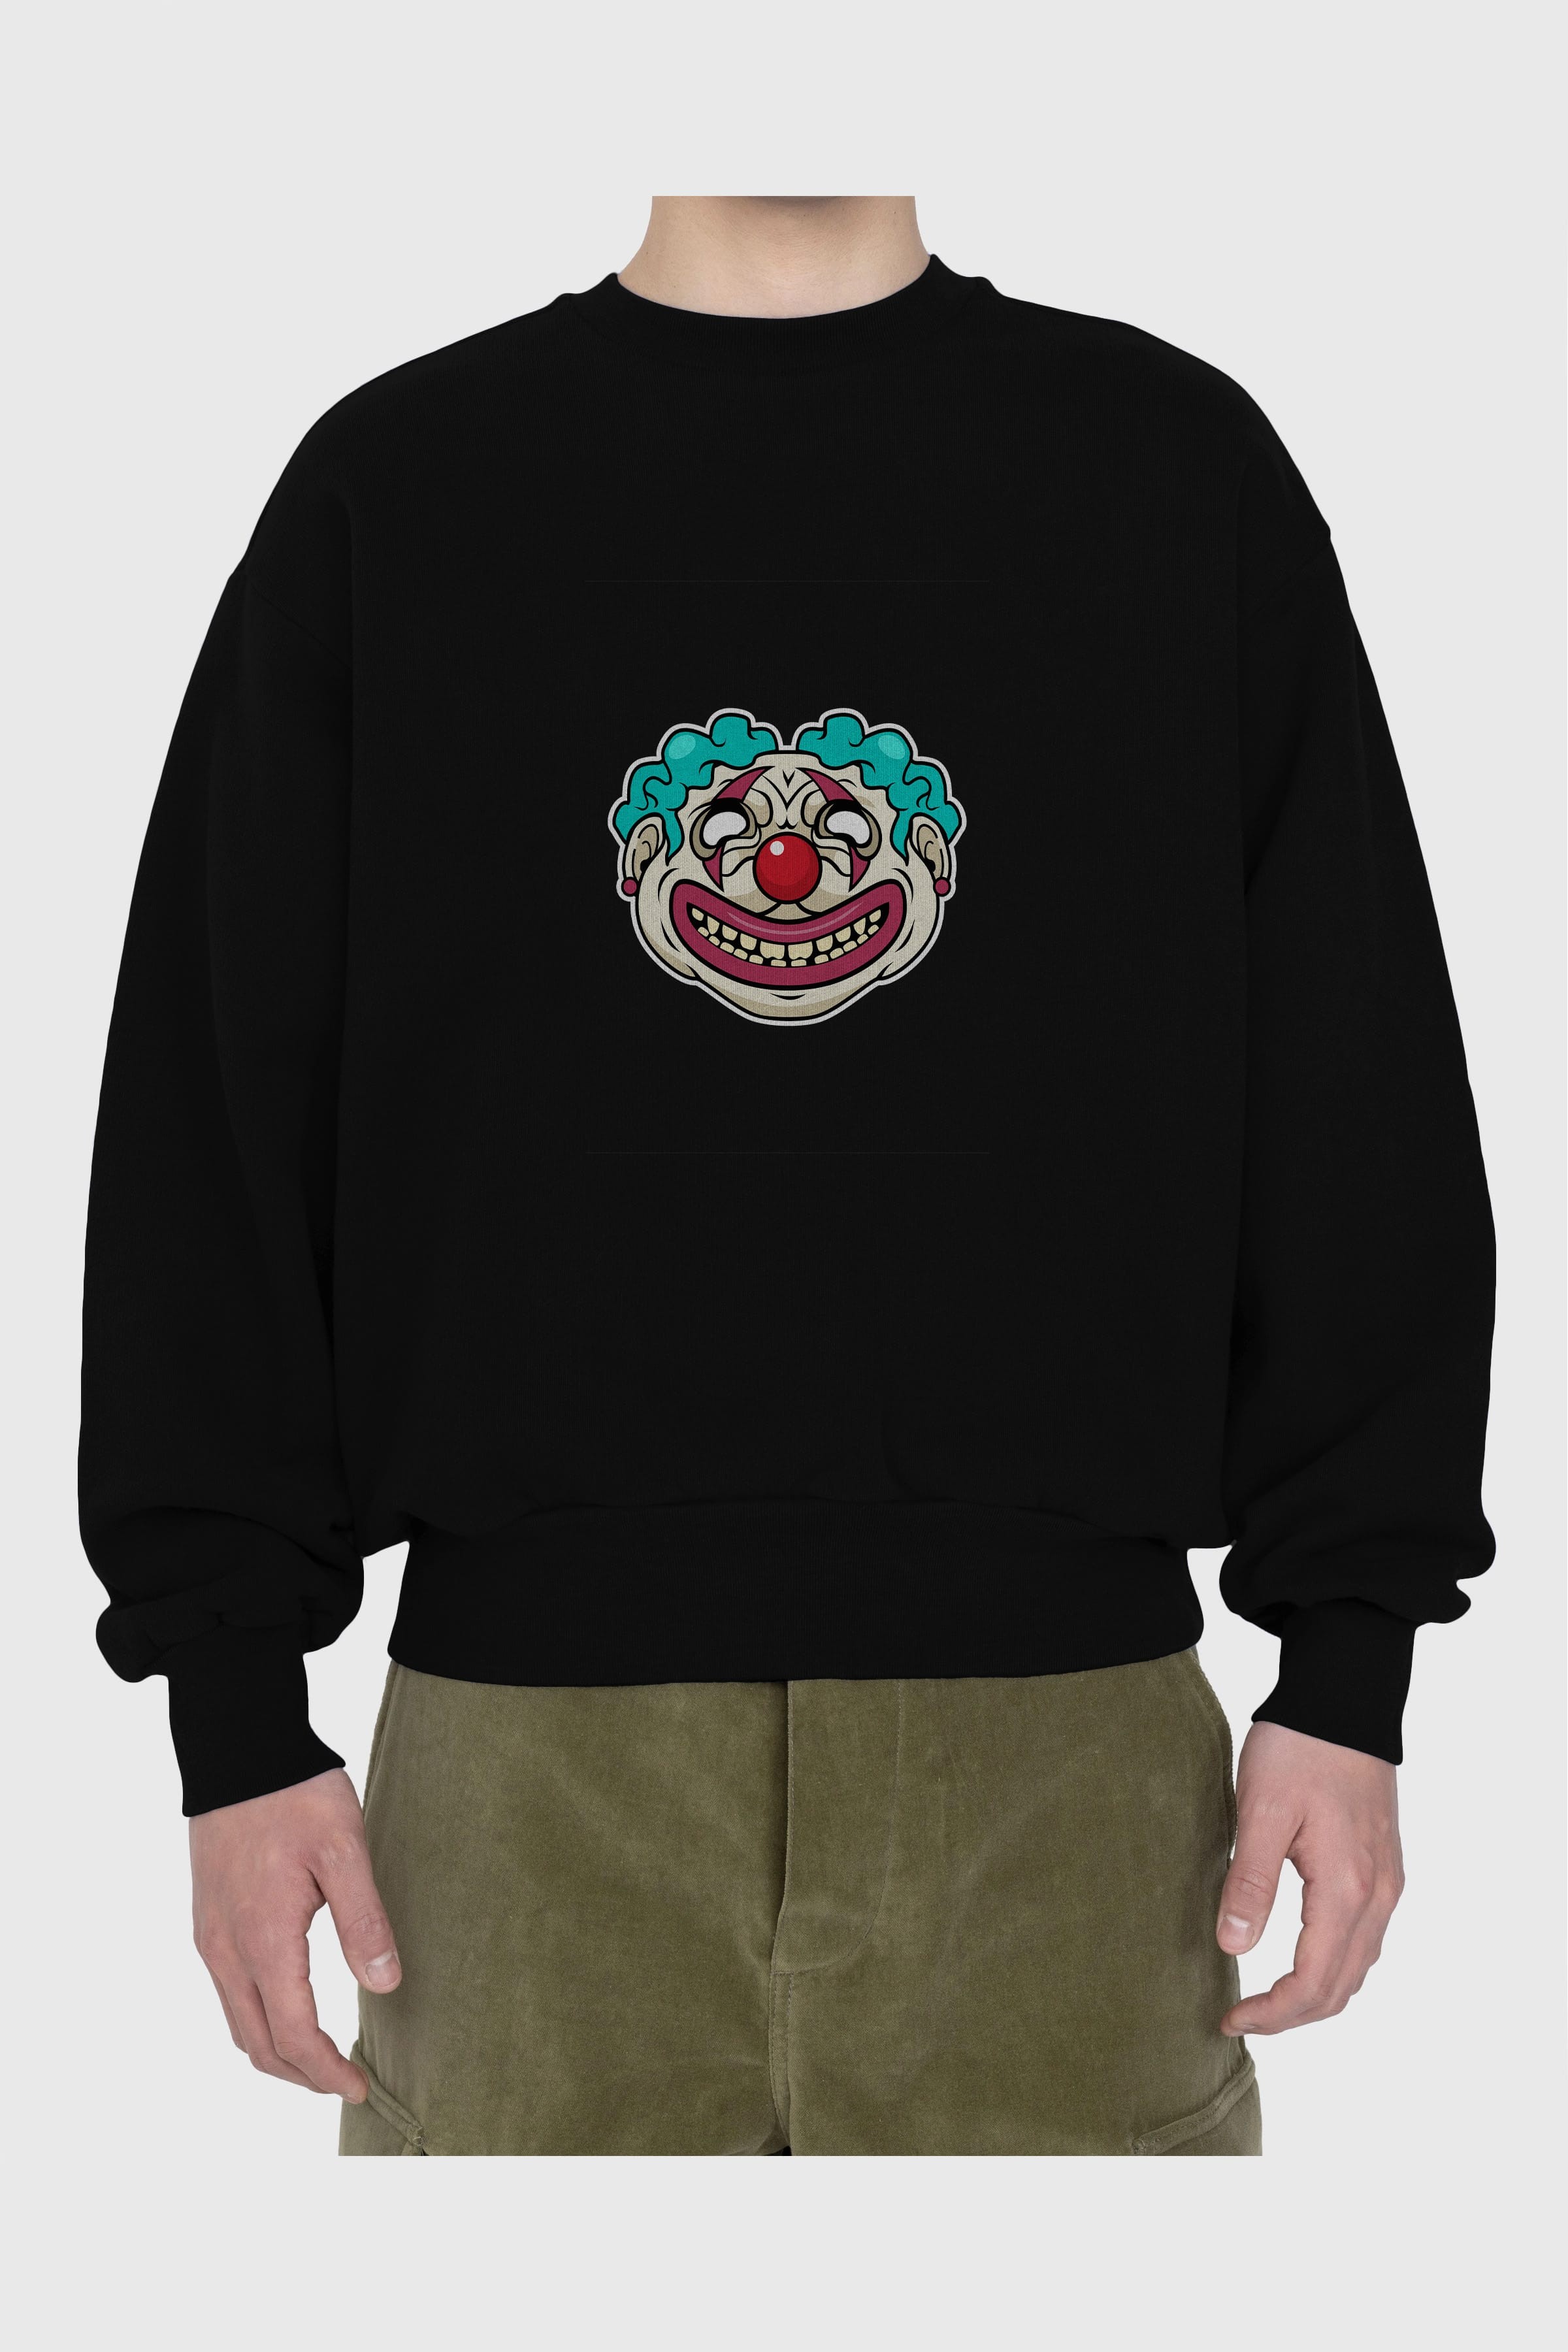 Clown Head Ön Baskılı Oversize Sweatshirt Erkek Kadın Unisex